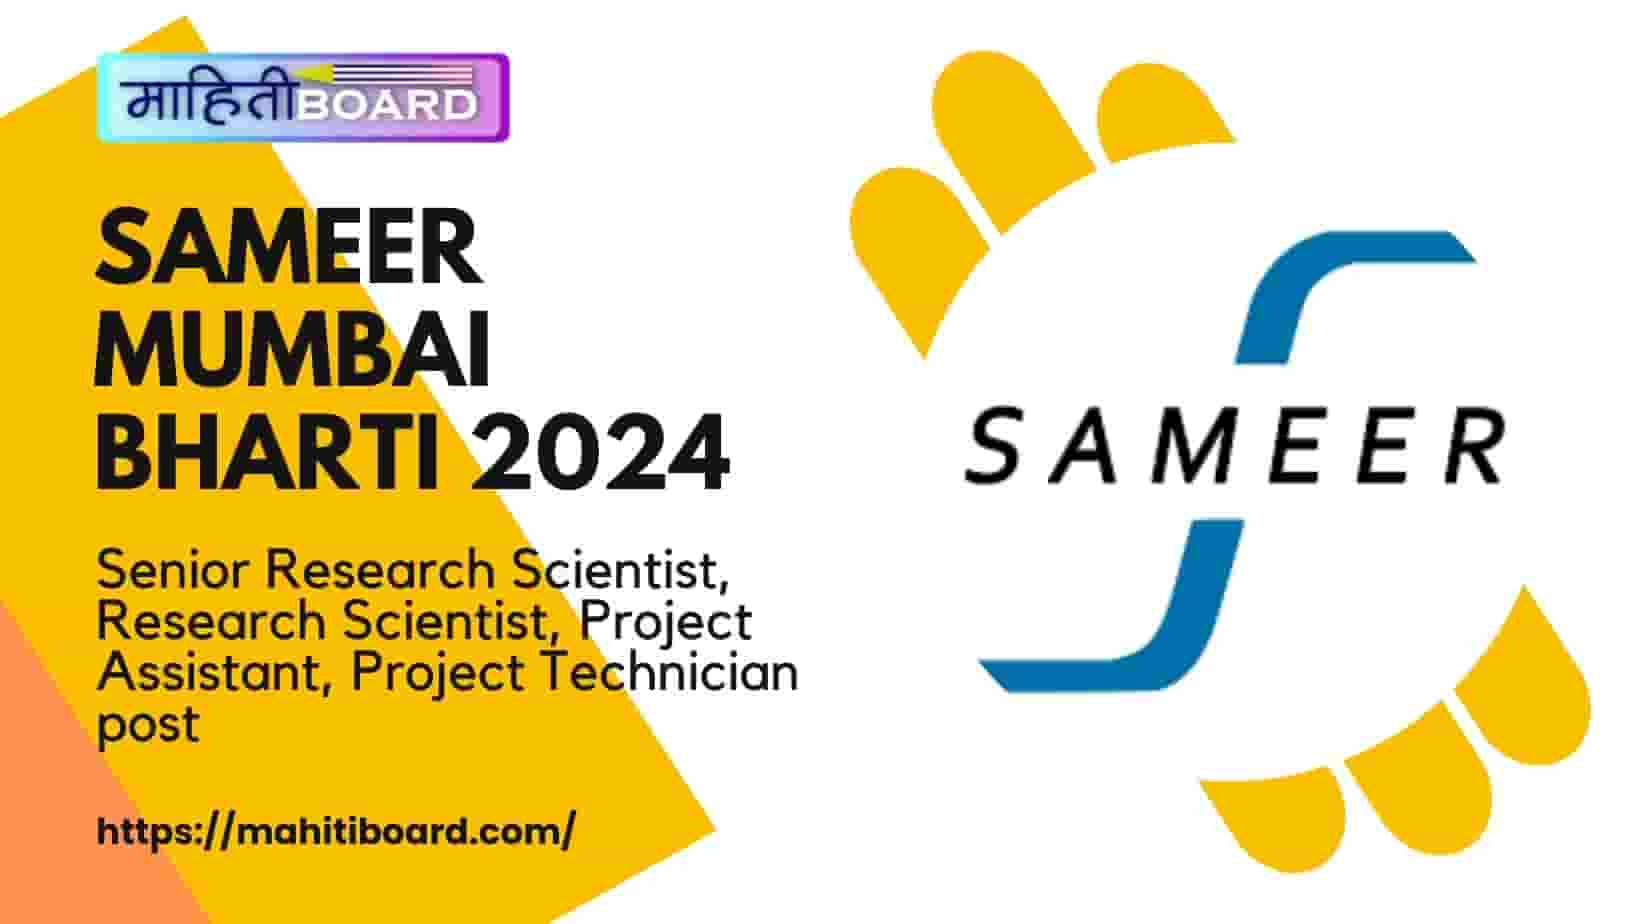 SAMEER Mumbai Bharti 2024